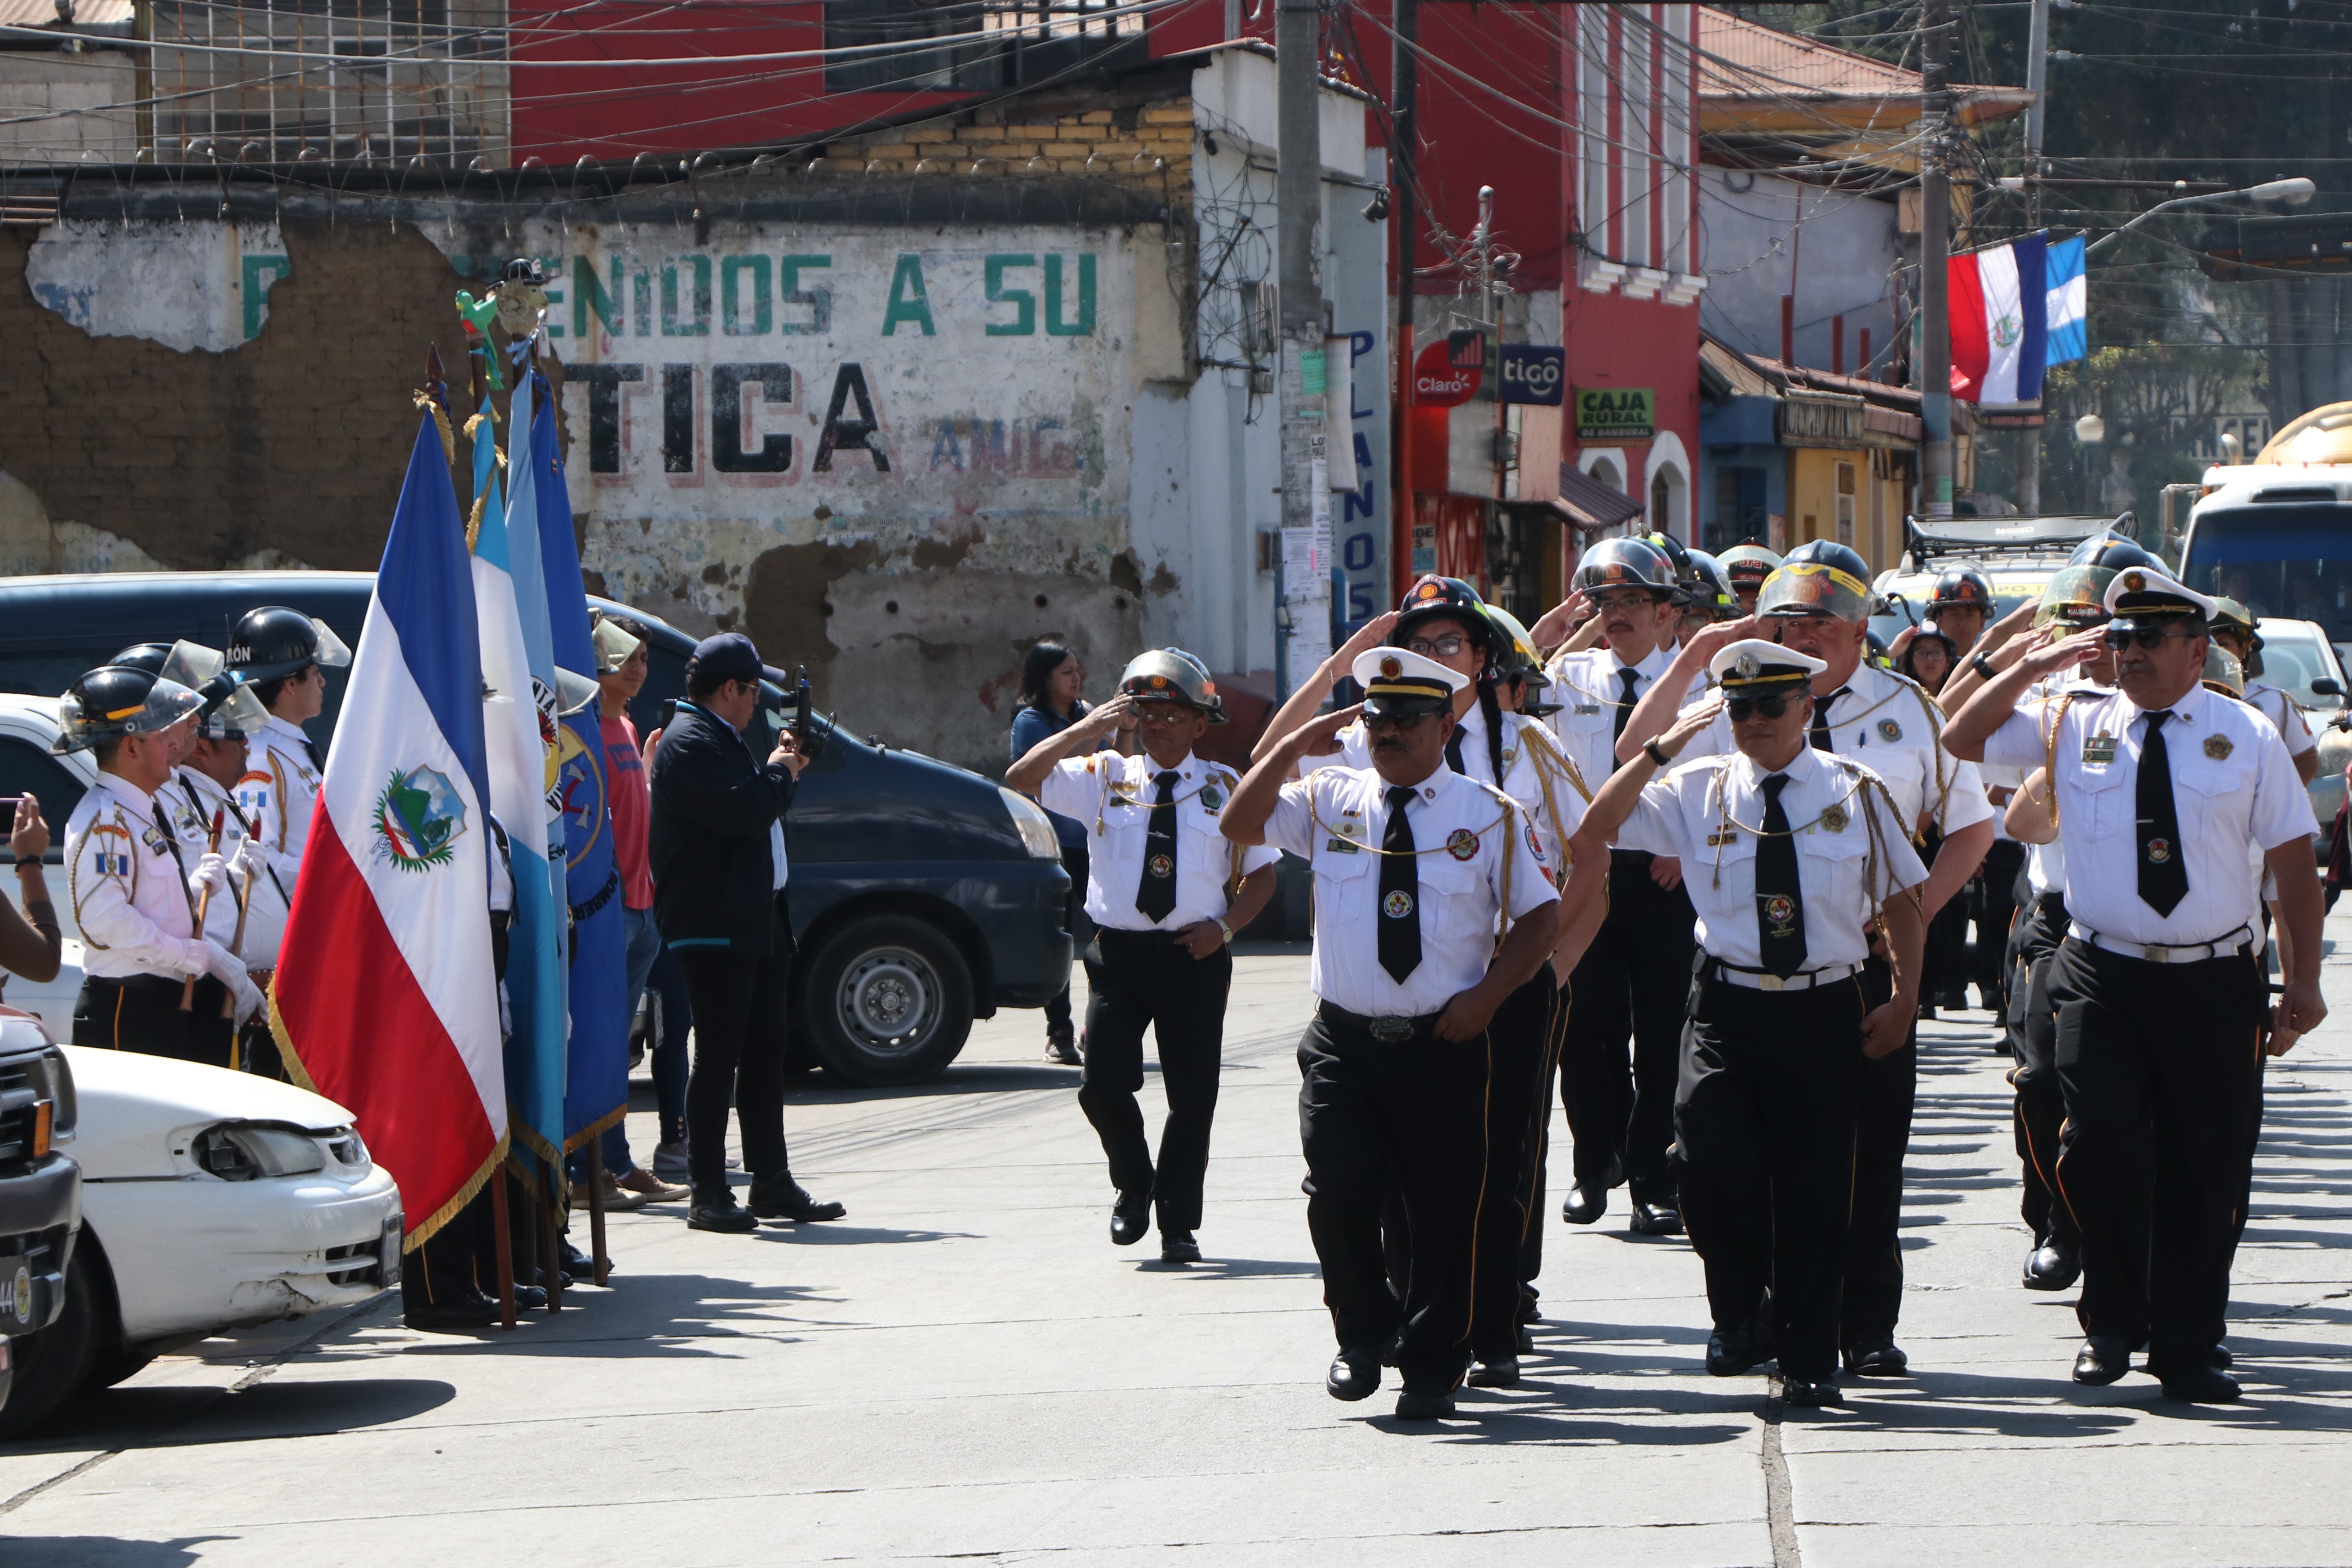 Para celebrar el 59 aniversario la institución de socorro organizó un desfile por las principales calles de Quetzaltenango. (Fotos Prensa Libre: Raúl Juárez)